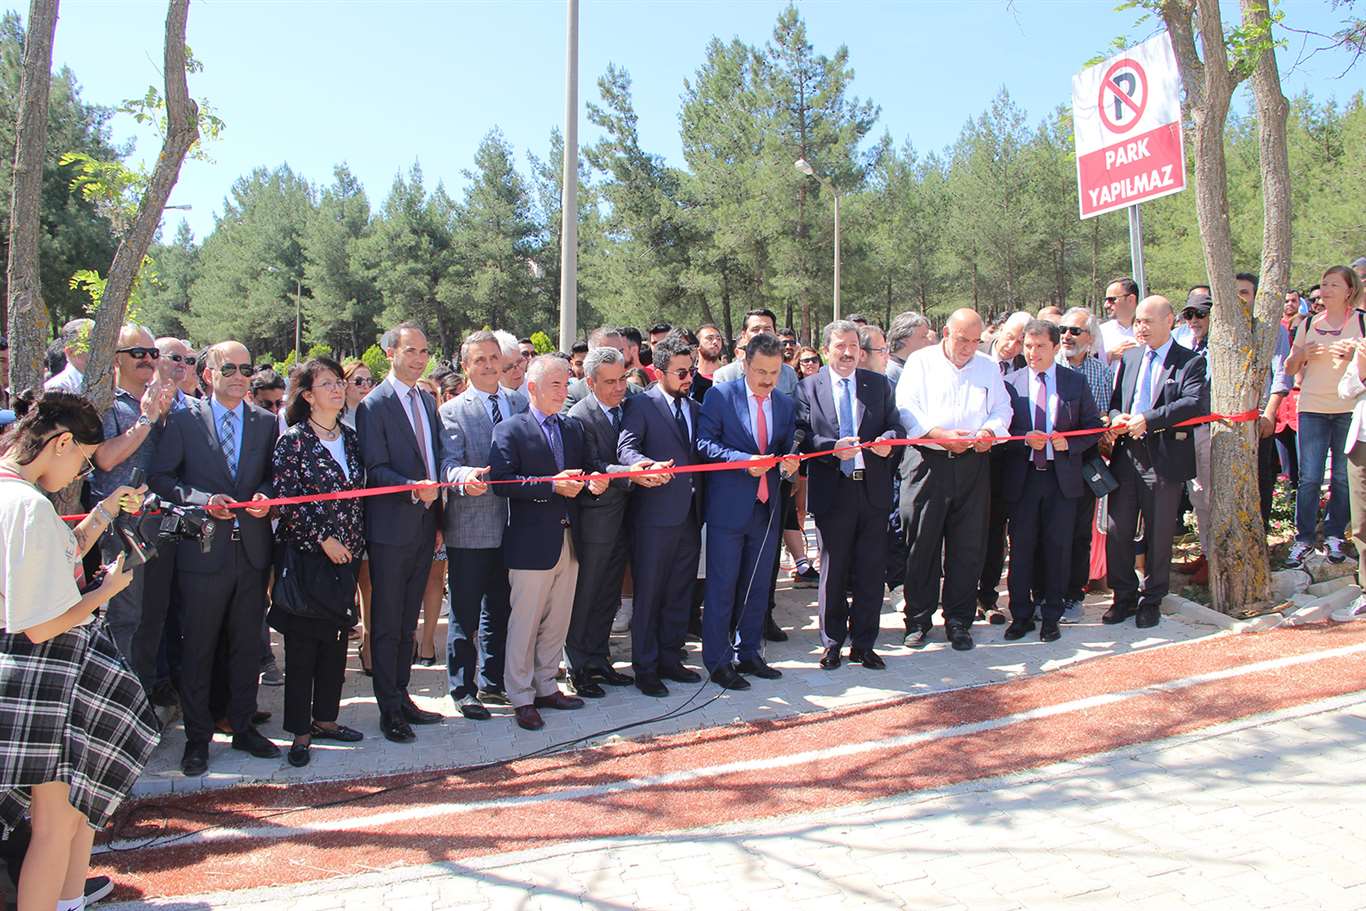    Muğla Sıtkı Koçman Üniversitesi'nde 'Yamaç Park' açıldı haberi